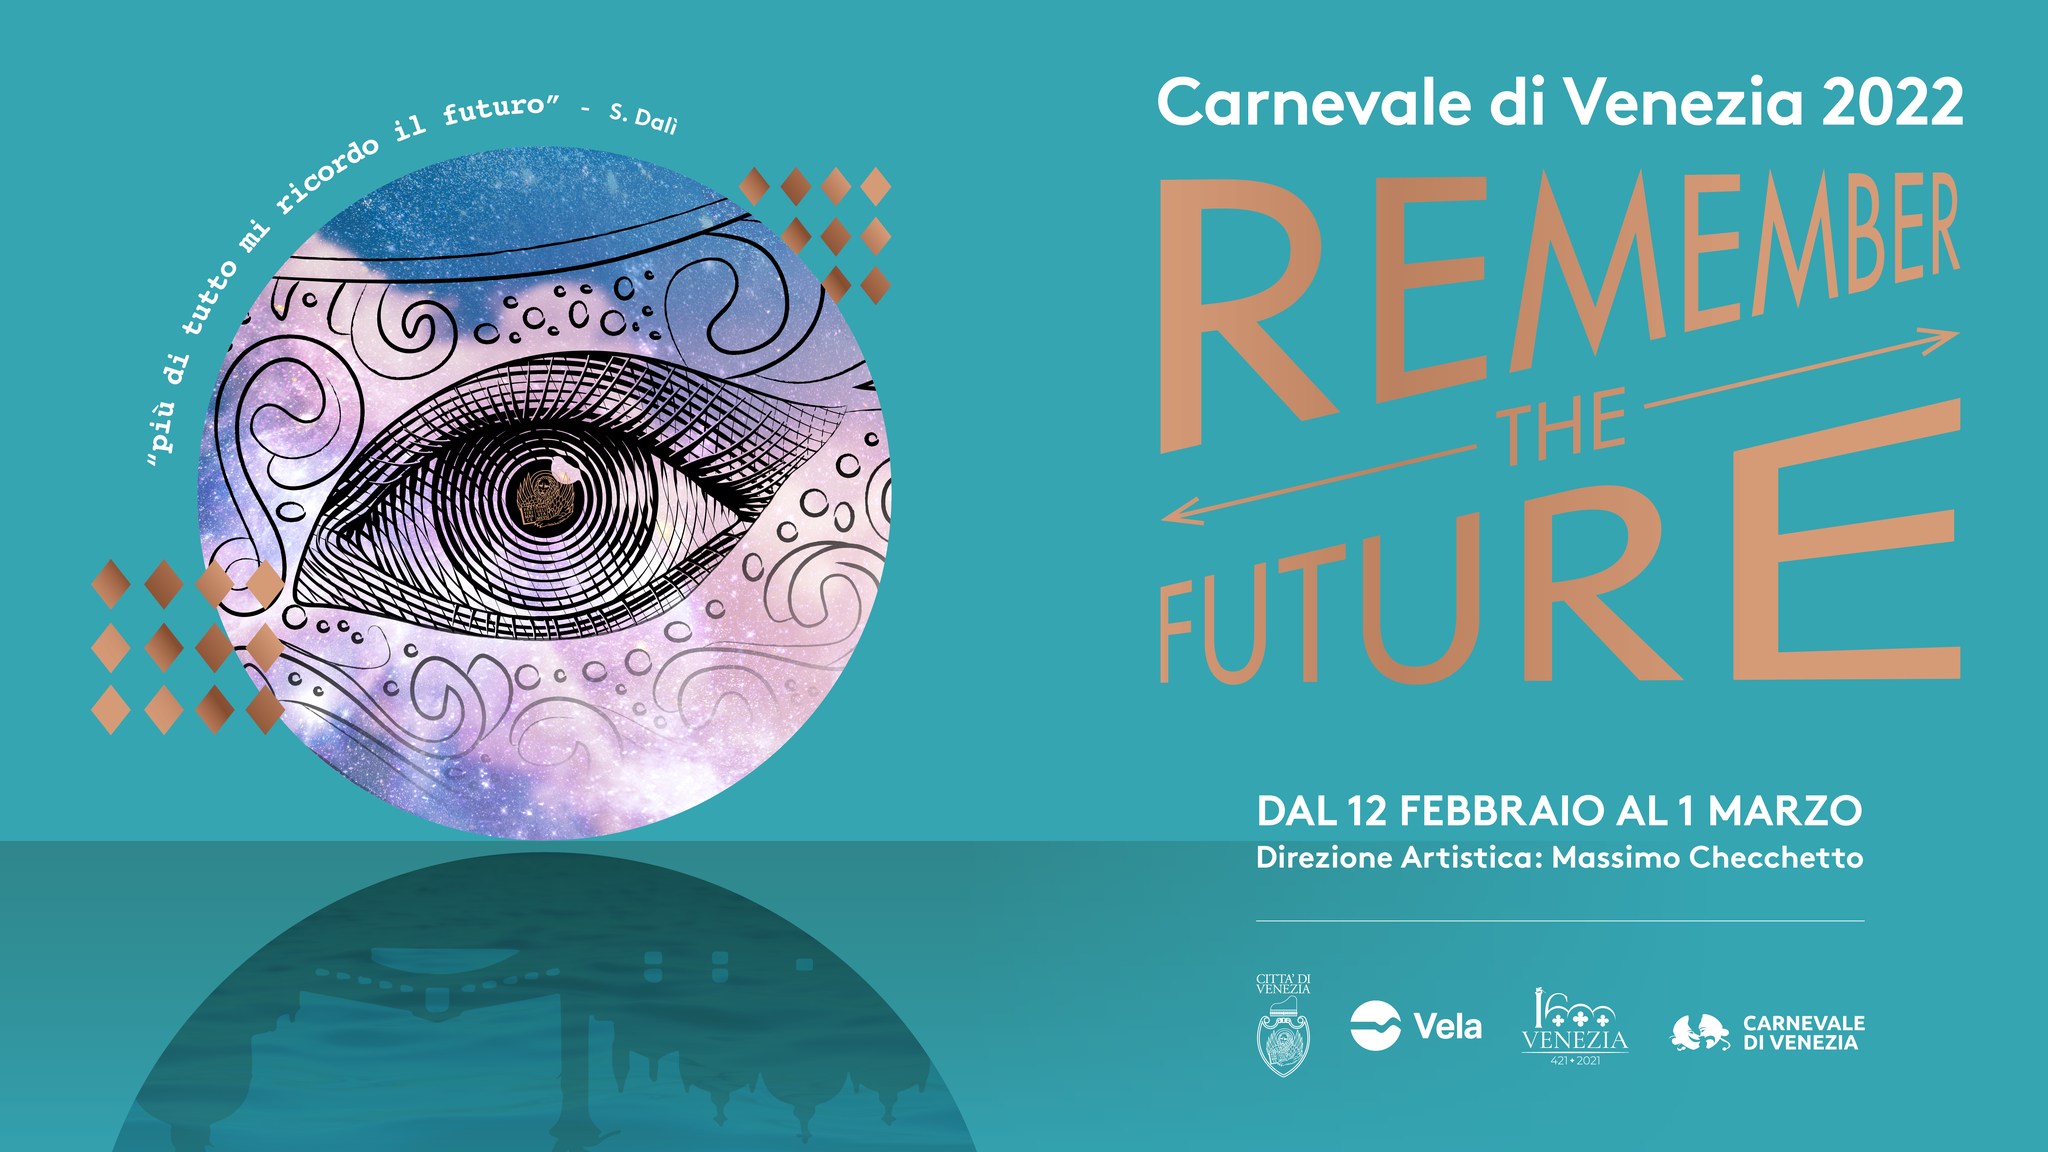 Carnevale Venezia 2022 – In Arsenale la magia di Nebula Solaris: Aperte le iscrizioni per gli spettacoli sull’acqua